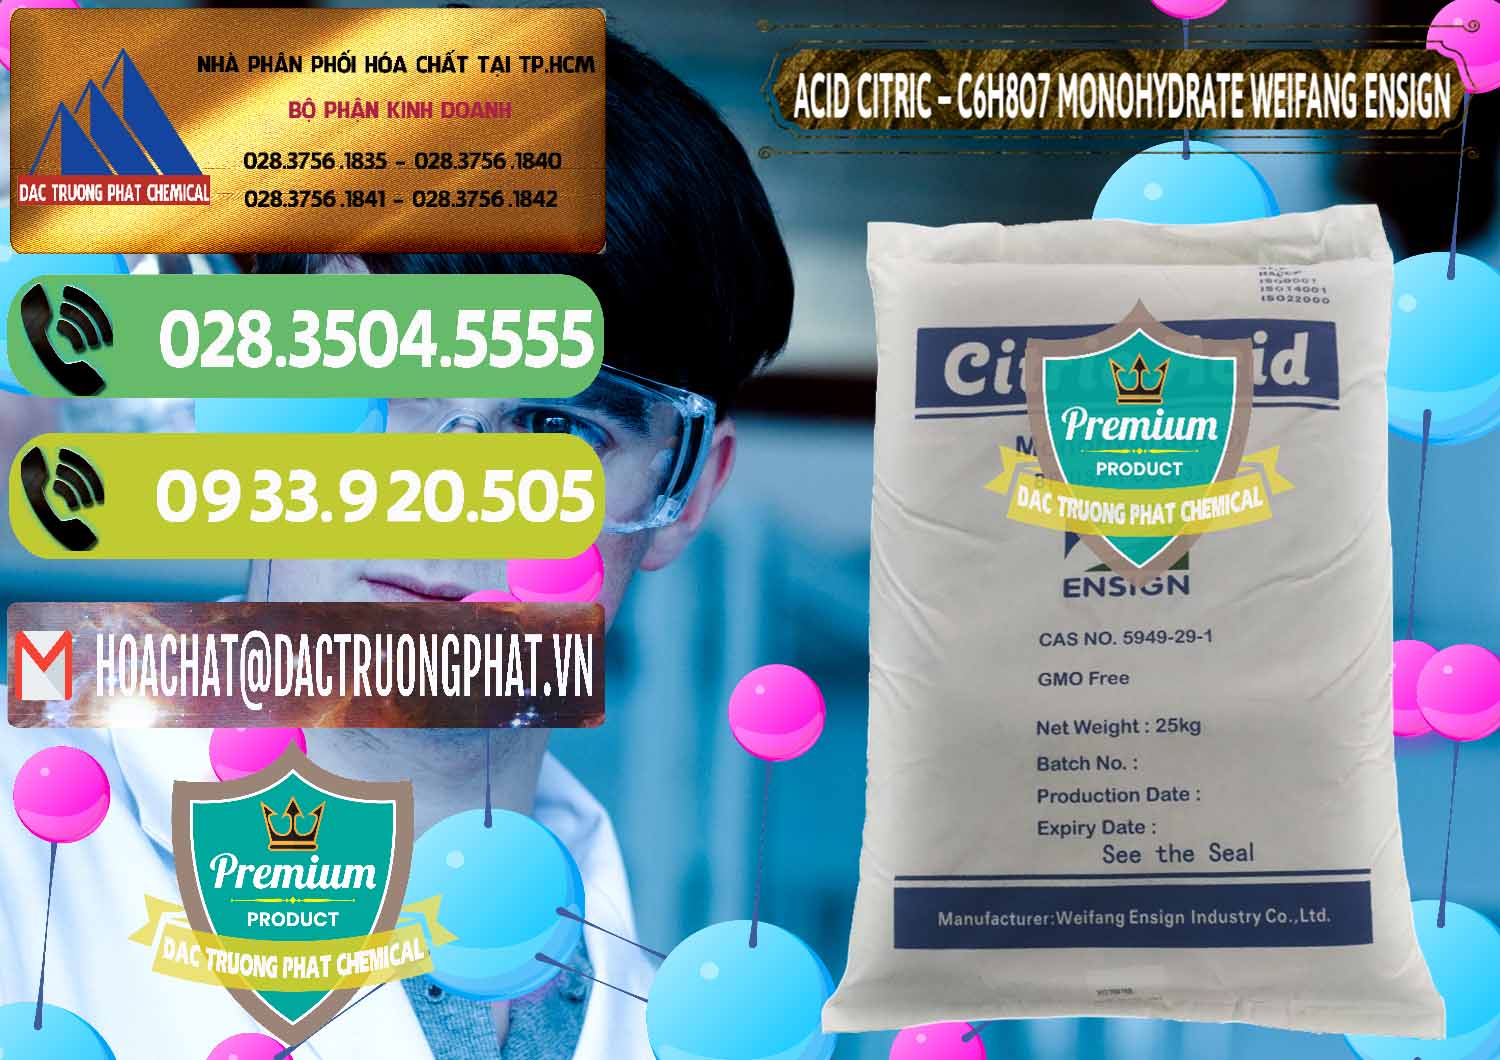 Đơn vị chuyên kinh doanh - bán Acid Citric - Axit Citric Monohydrate Weifang Trung Quốc China - 0009 - Nơi chuyên kinh doanh _ cung cấp hóa chất tại TP.HCM - hoachatmientay.vn